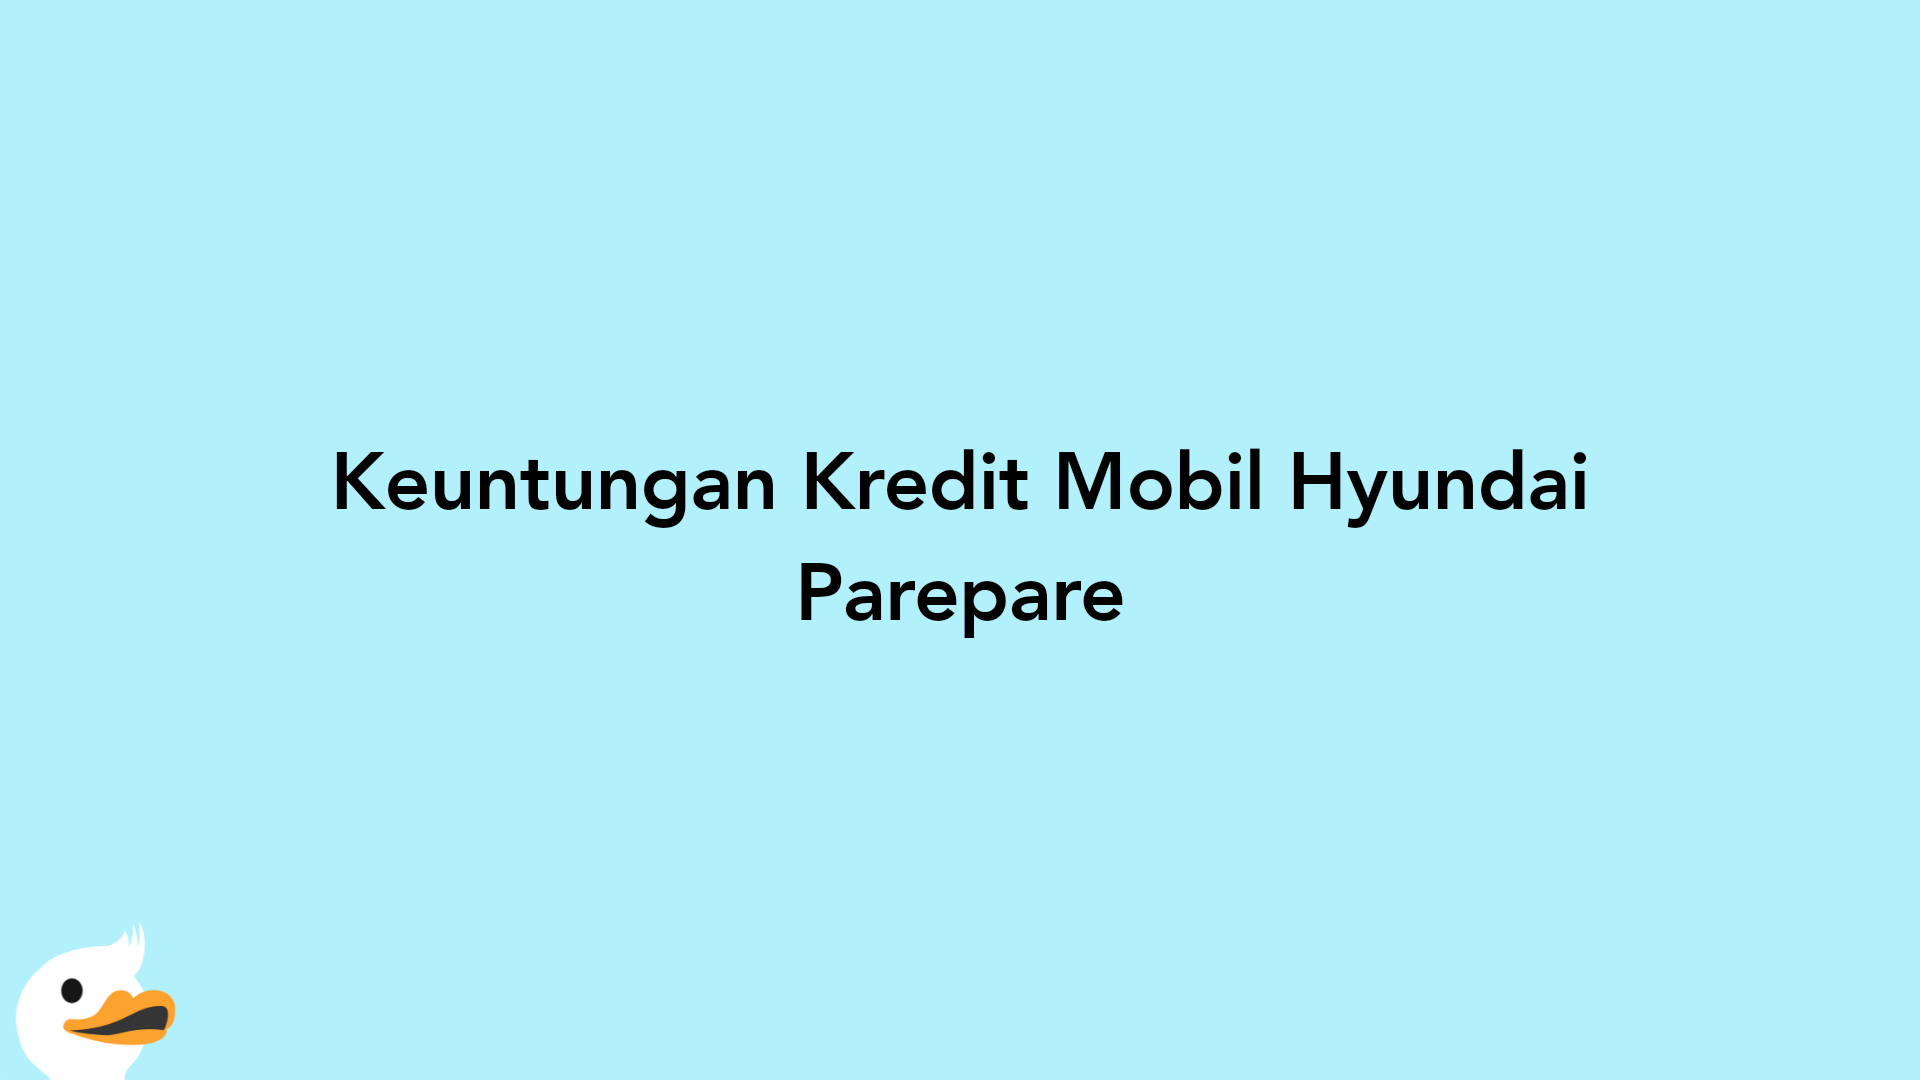 Keuntungan Kredit Mobil Hyundai Parepare